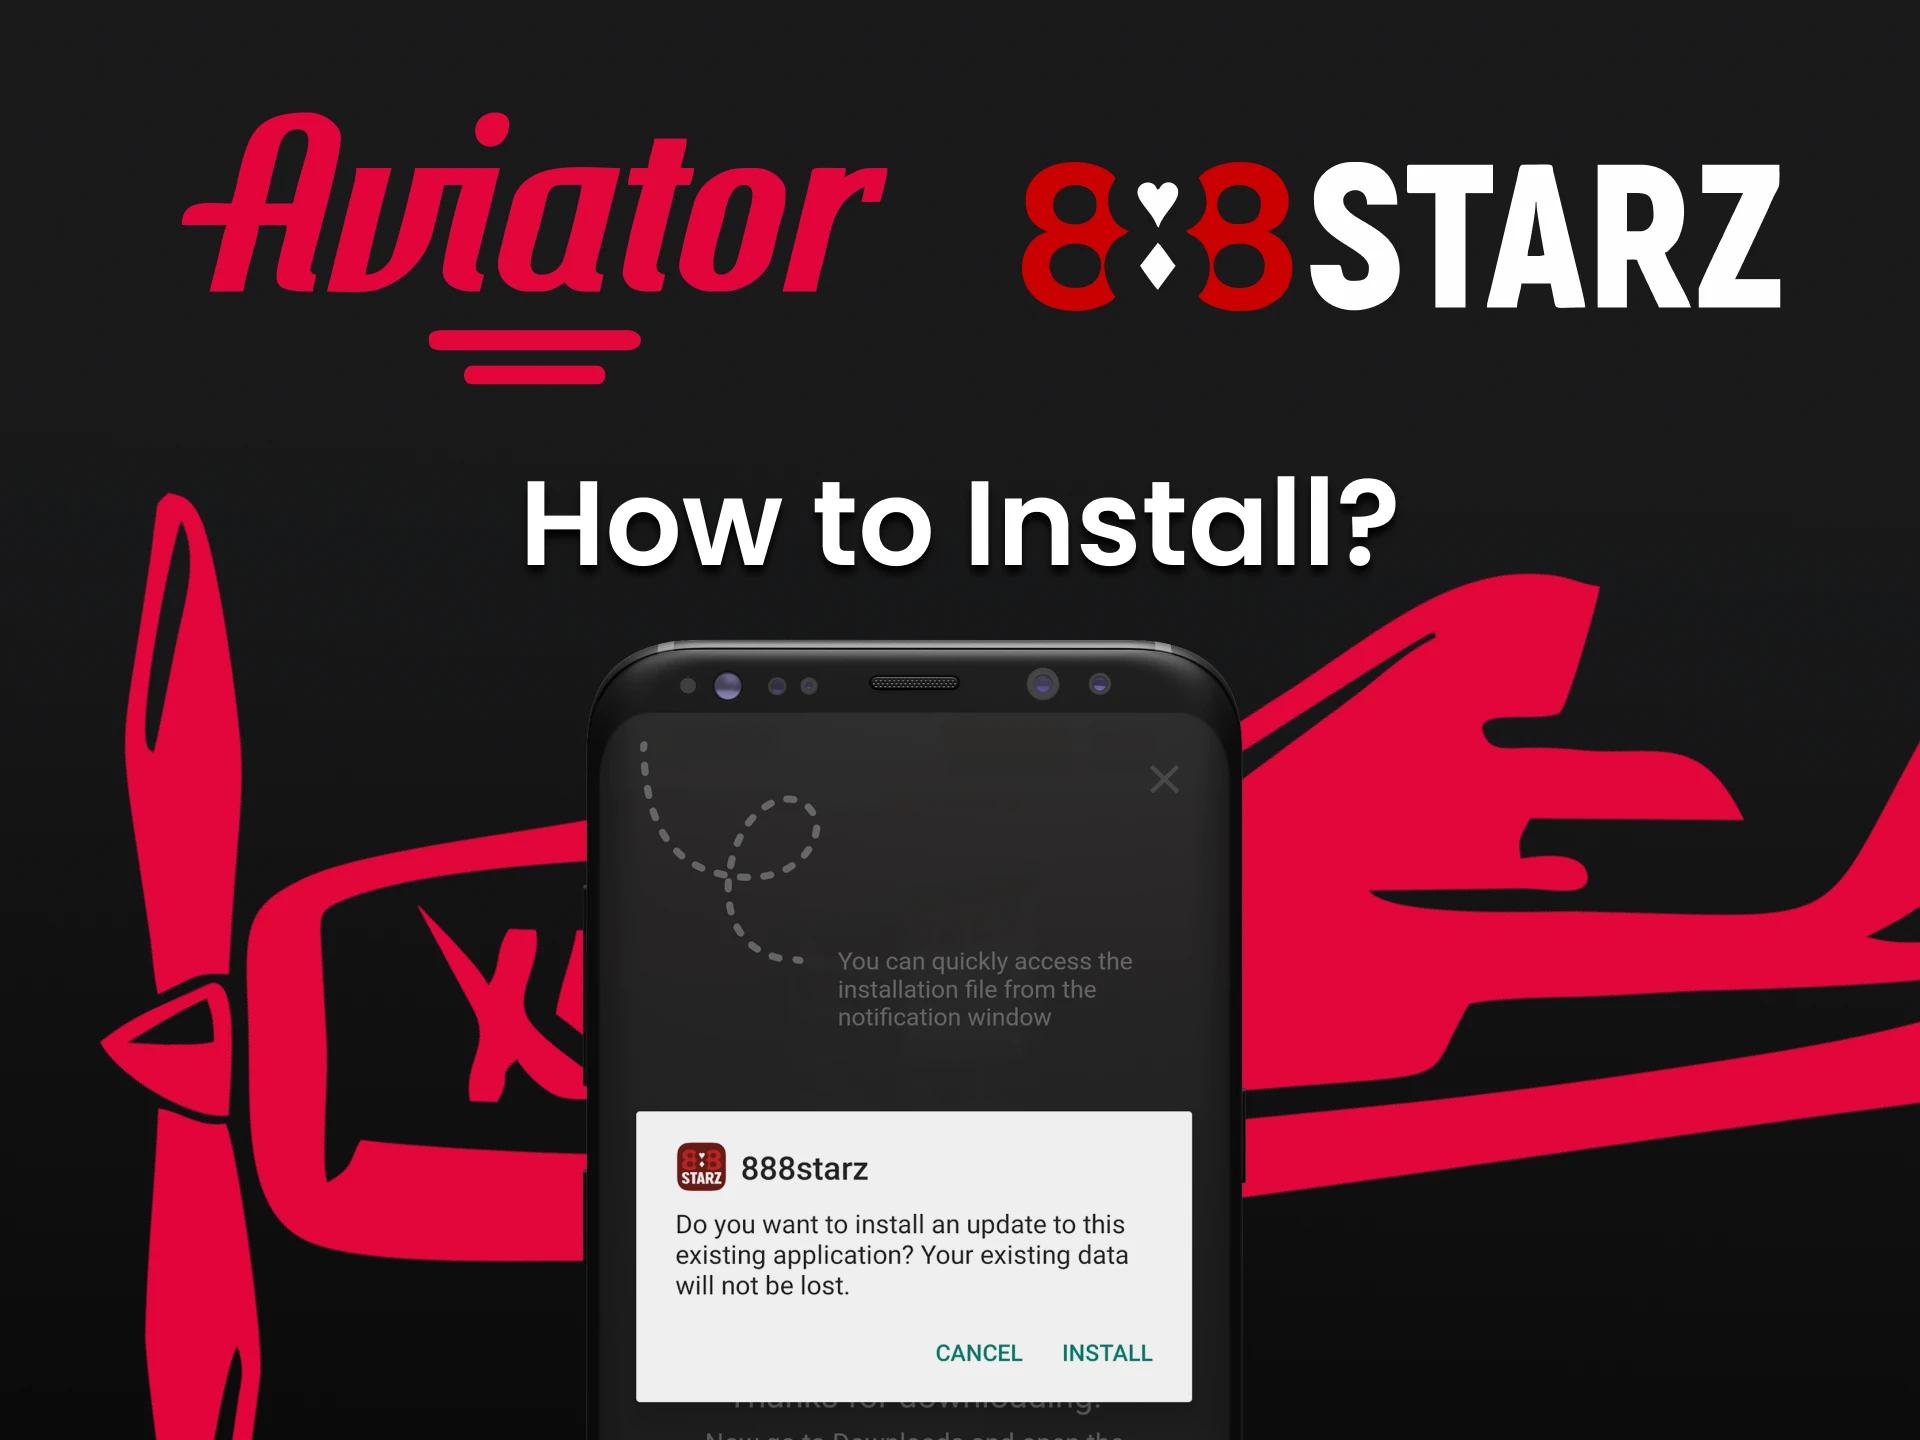 Siga as instruções para instalar o aplicativo 888starz.